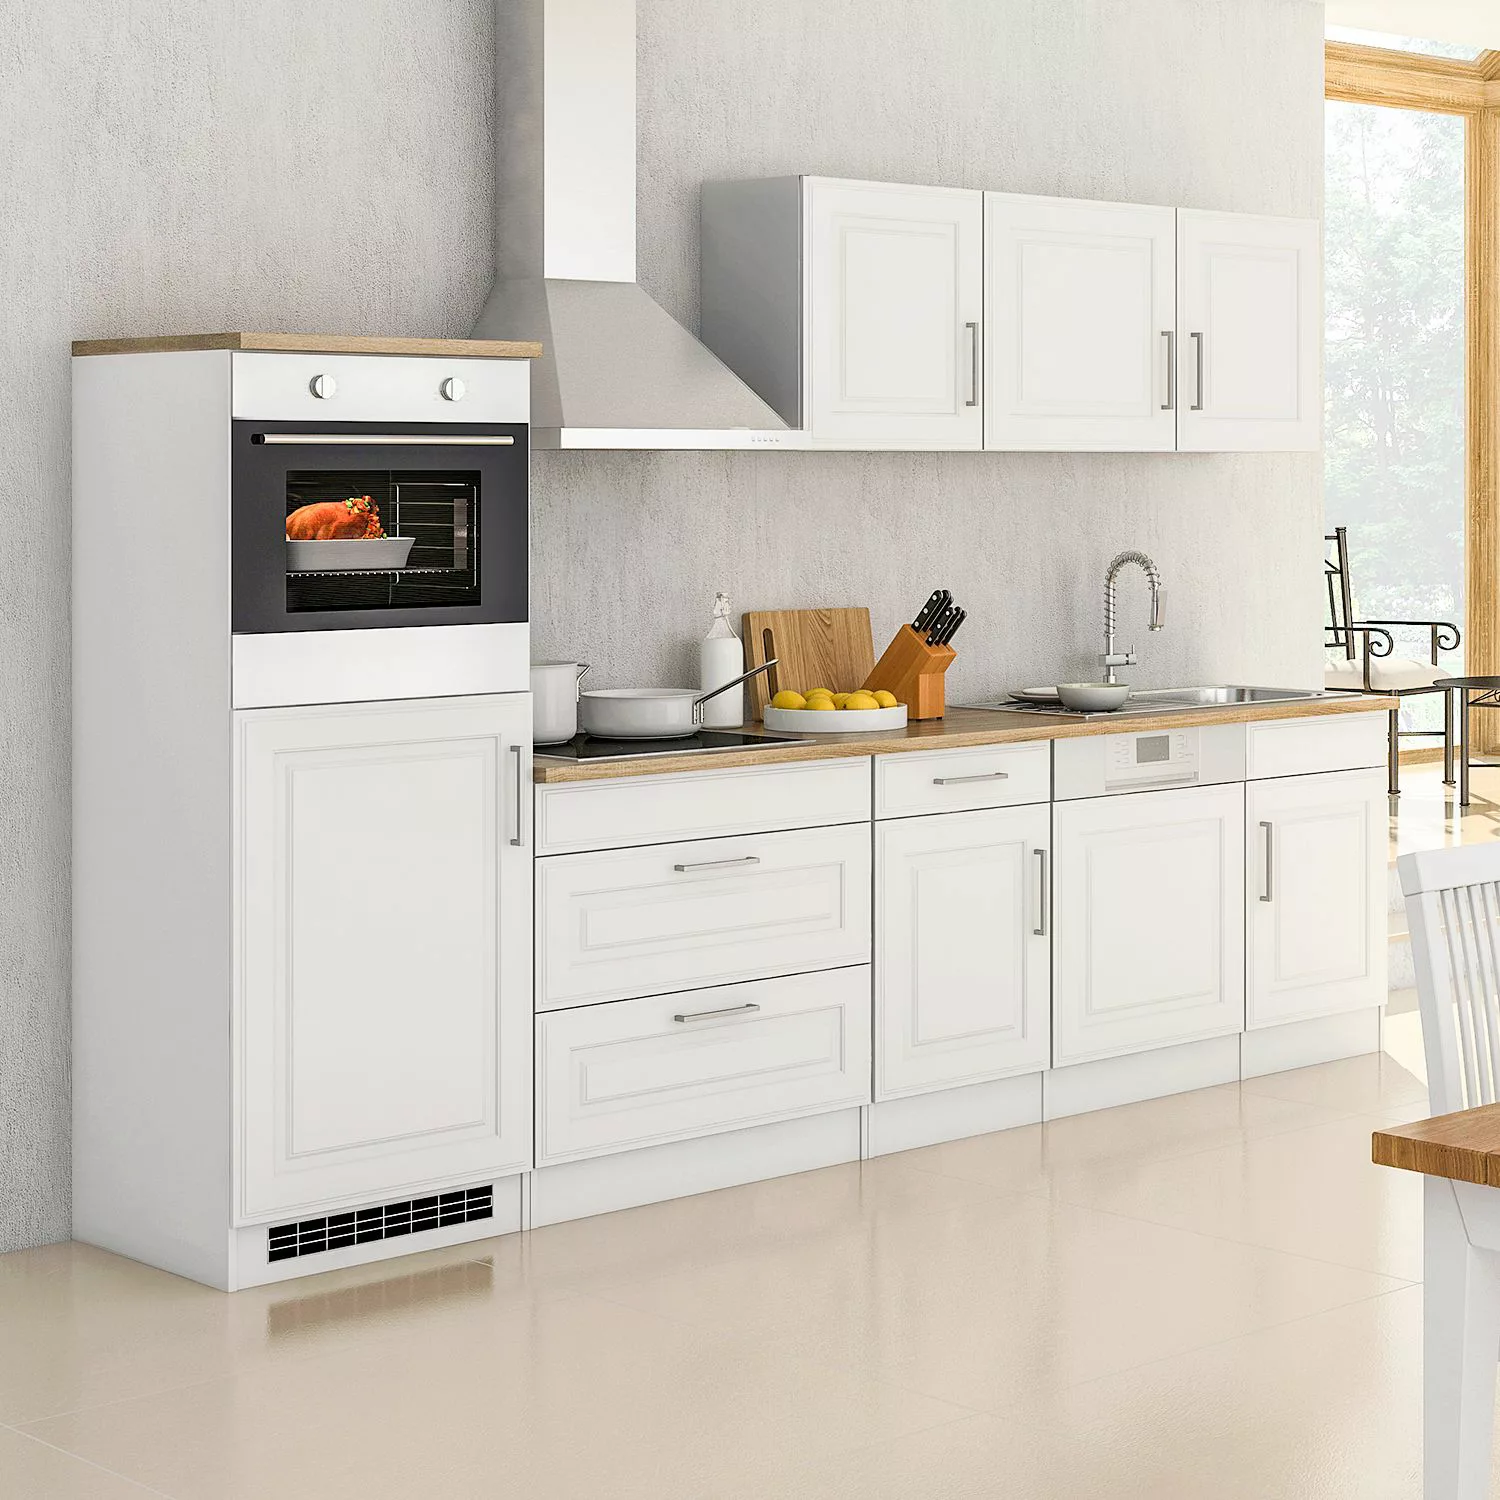 Held Möbel Küchenzeile Rom 300 cm Landhaus Grau Matt mit E-Geräten günstig online kaufen